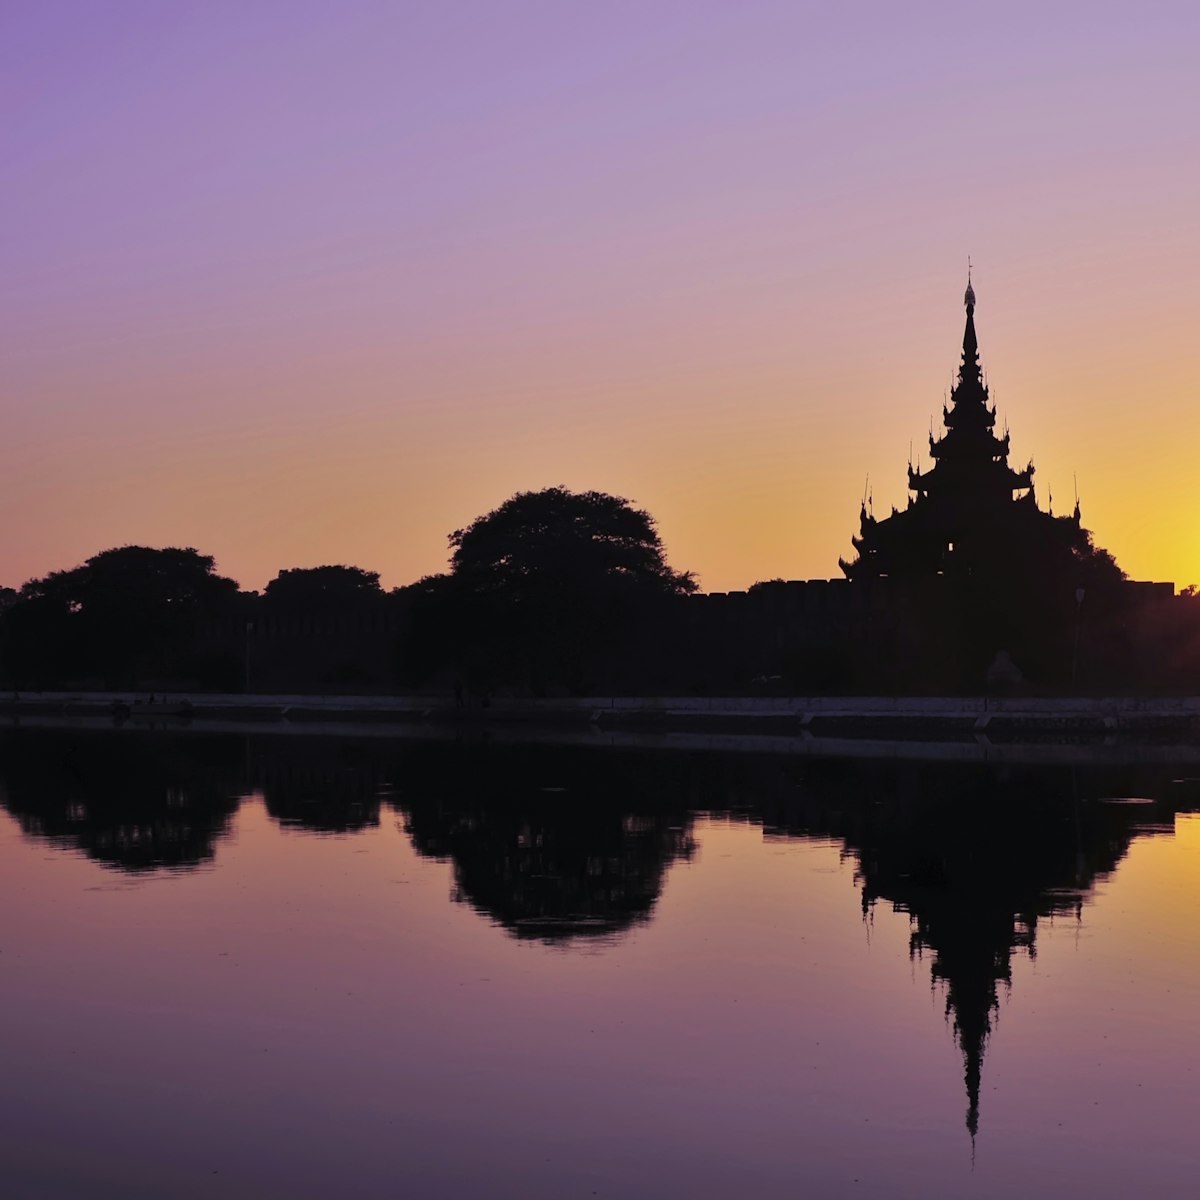 Sunset at wall of Mandalay palace